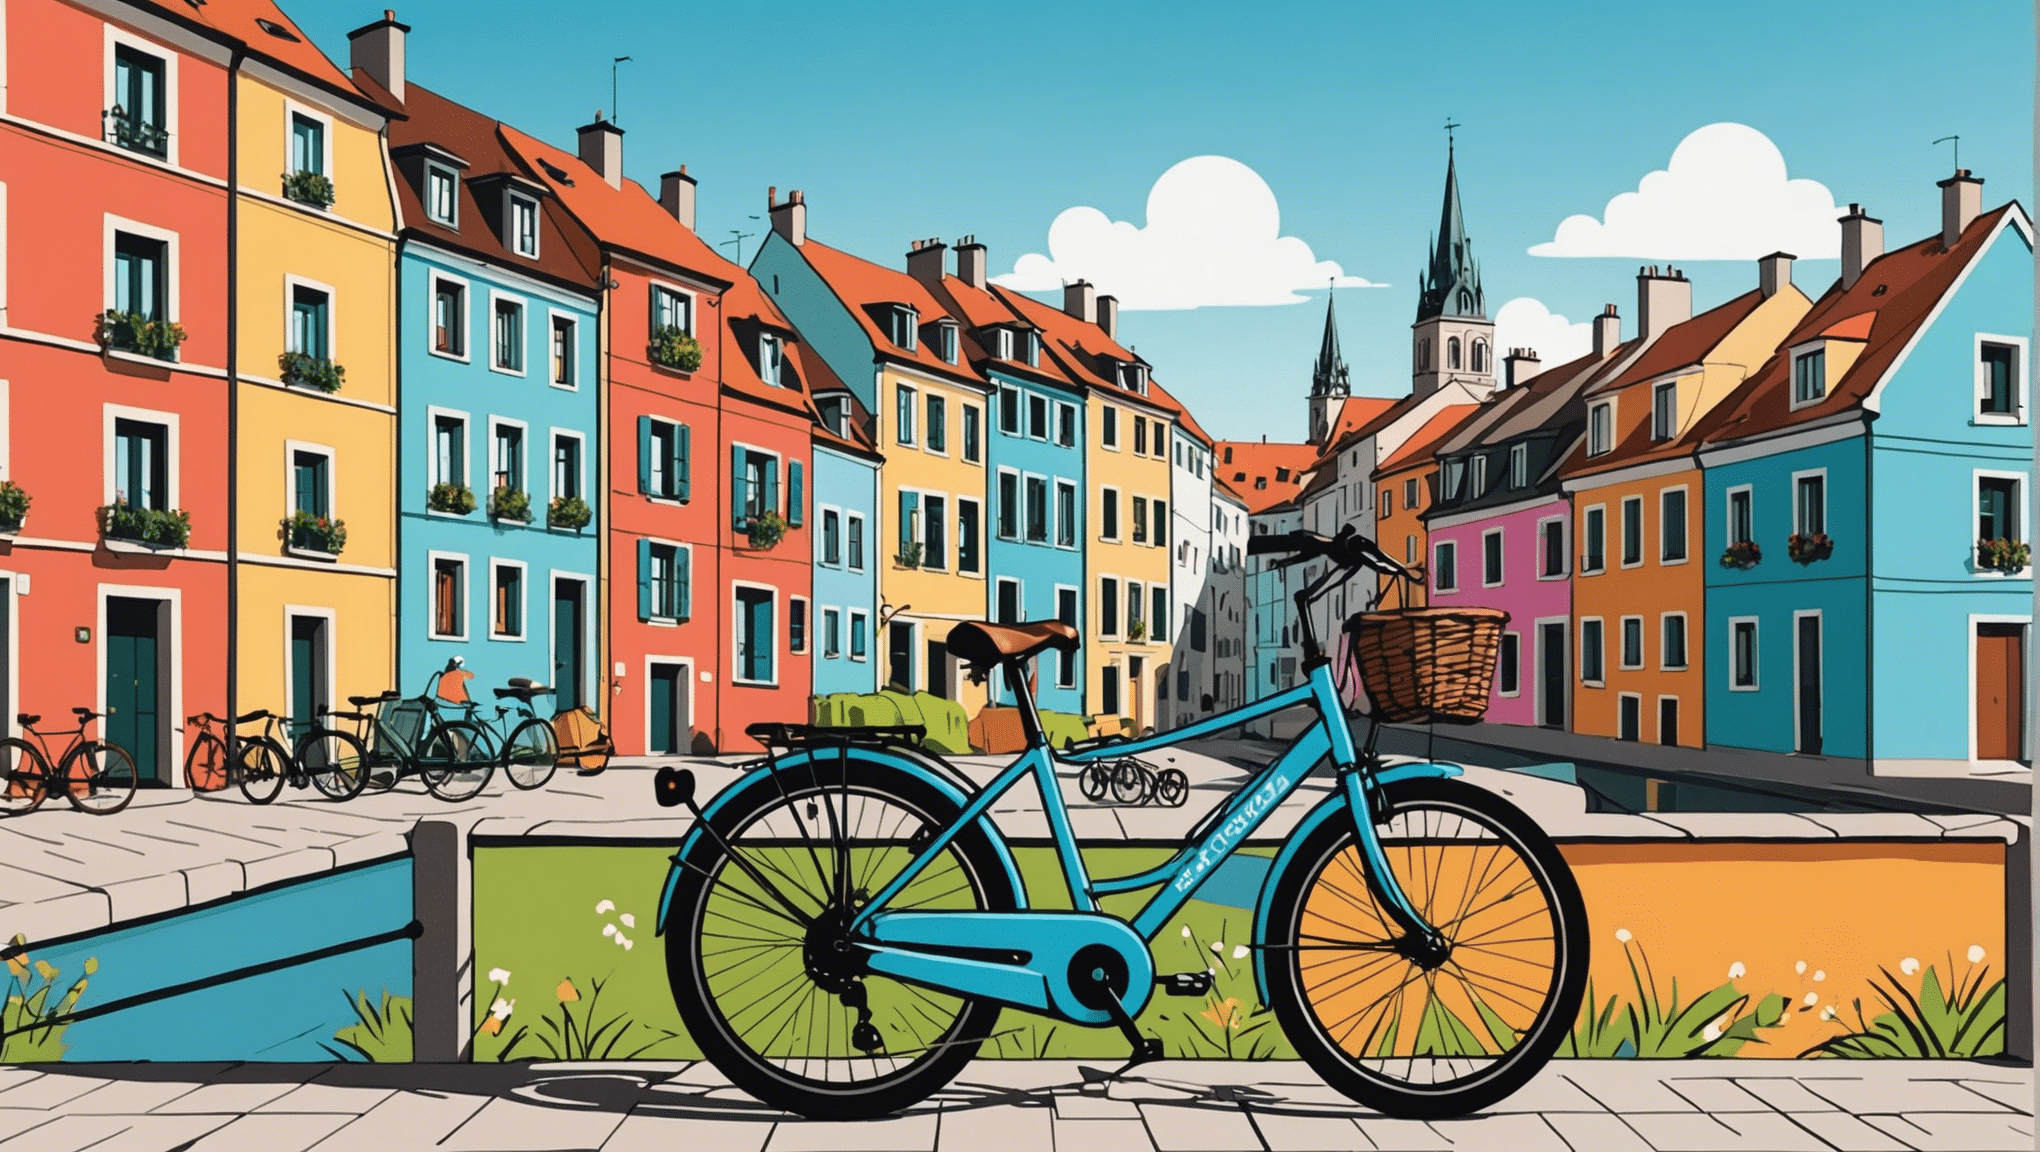 Descubre los destinos imprescindibles para los amantes de los viajes en bicicleta por Europa con nuestros consejos para explorar el continente sobre dos ruedas.